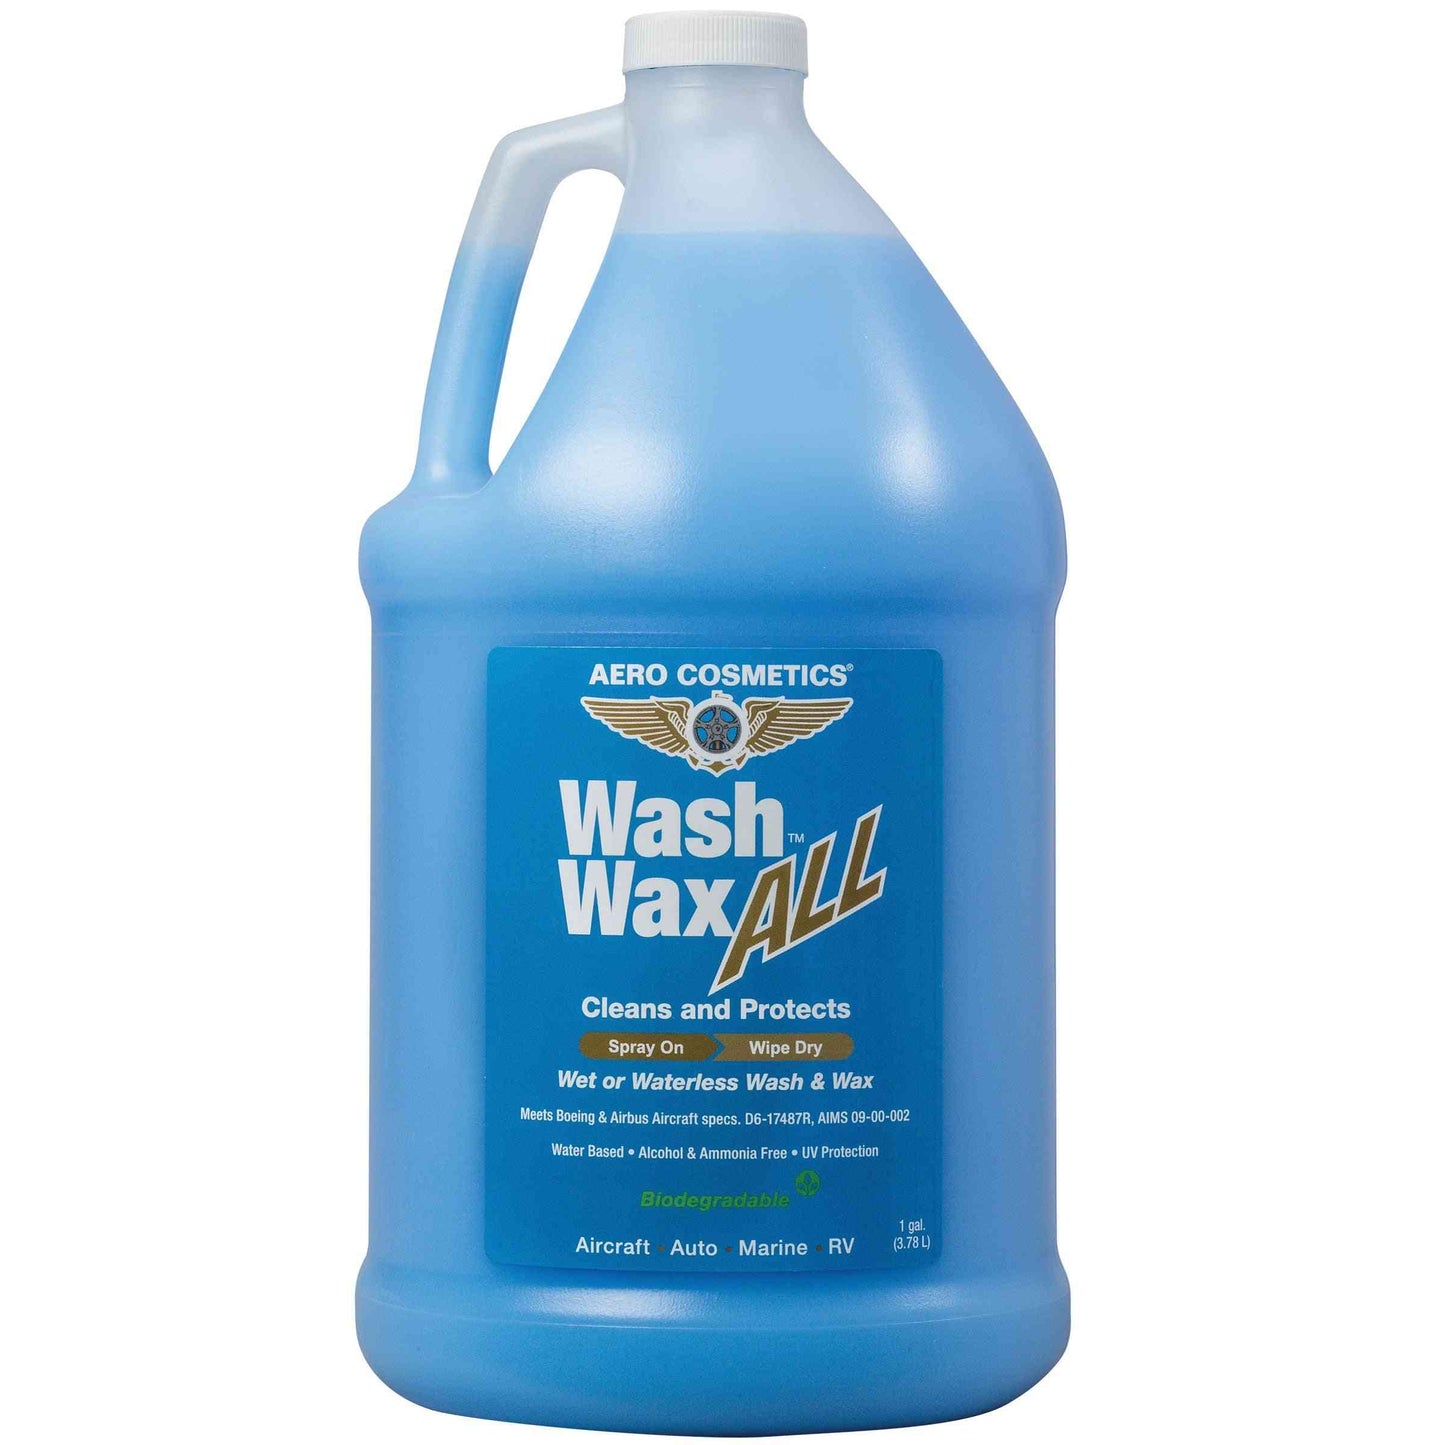 Waterless Wash Wax ALL (1 Gallon), Aero Cosmetics, aircraft, car, rv, boat, motorcycle, waterless wash 